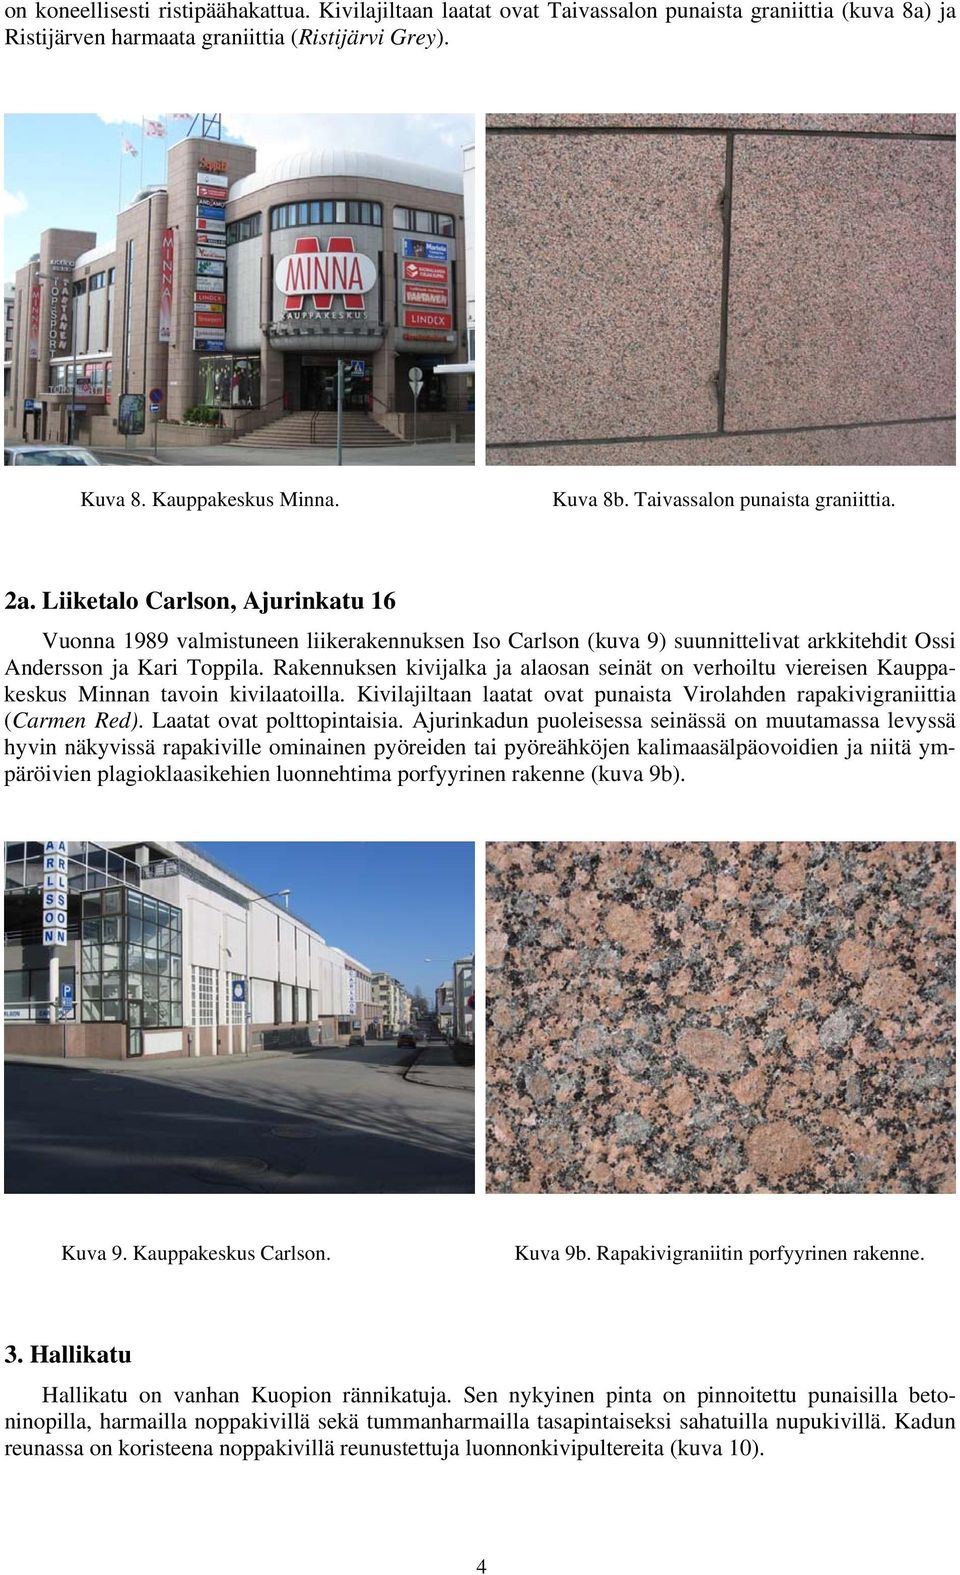 Rakennuksen kivijalka ja alaosan seinät on verhoiltu viereisen Kauppakeskus Minnan tavoin kivilaatoilla. Kivilajiltaan laatat ovat punaista Virolahden rapakivigraniittia (Carmen Red).